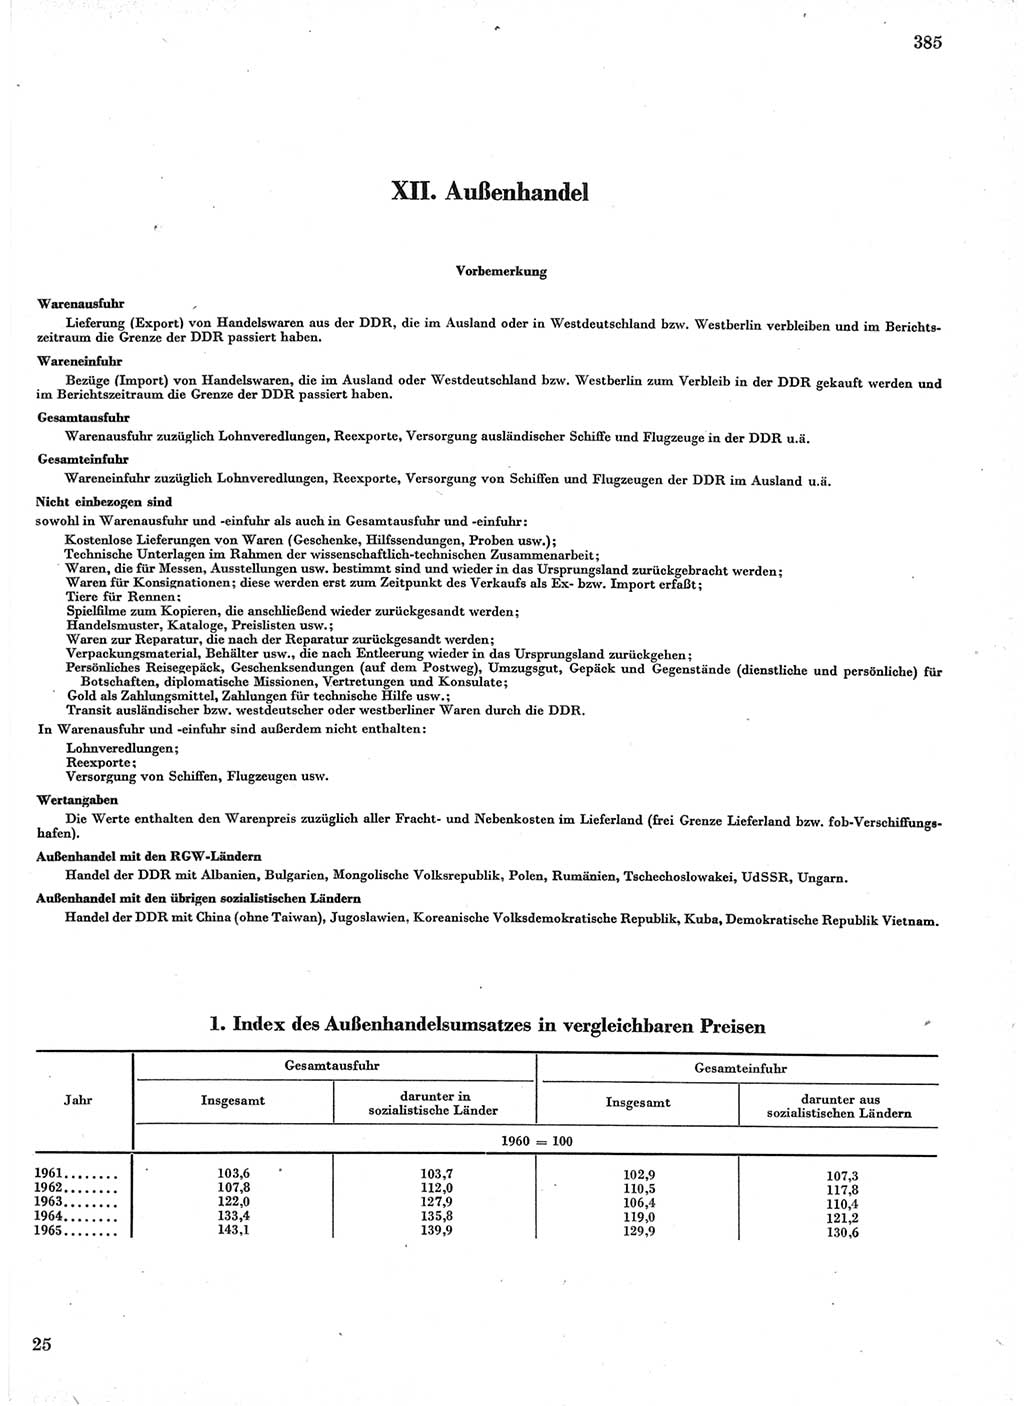 Statistisches Jahrbuch der Deutschen Demokratischen Republik (DDR) 1966, Seite 385 (Stat. Jb. DDR 1966, S. 385)